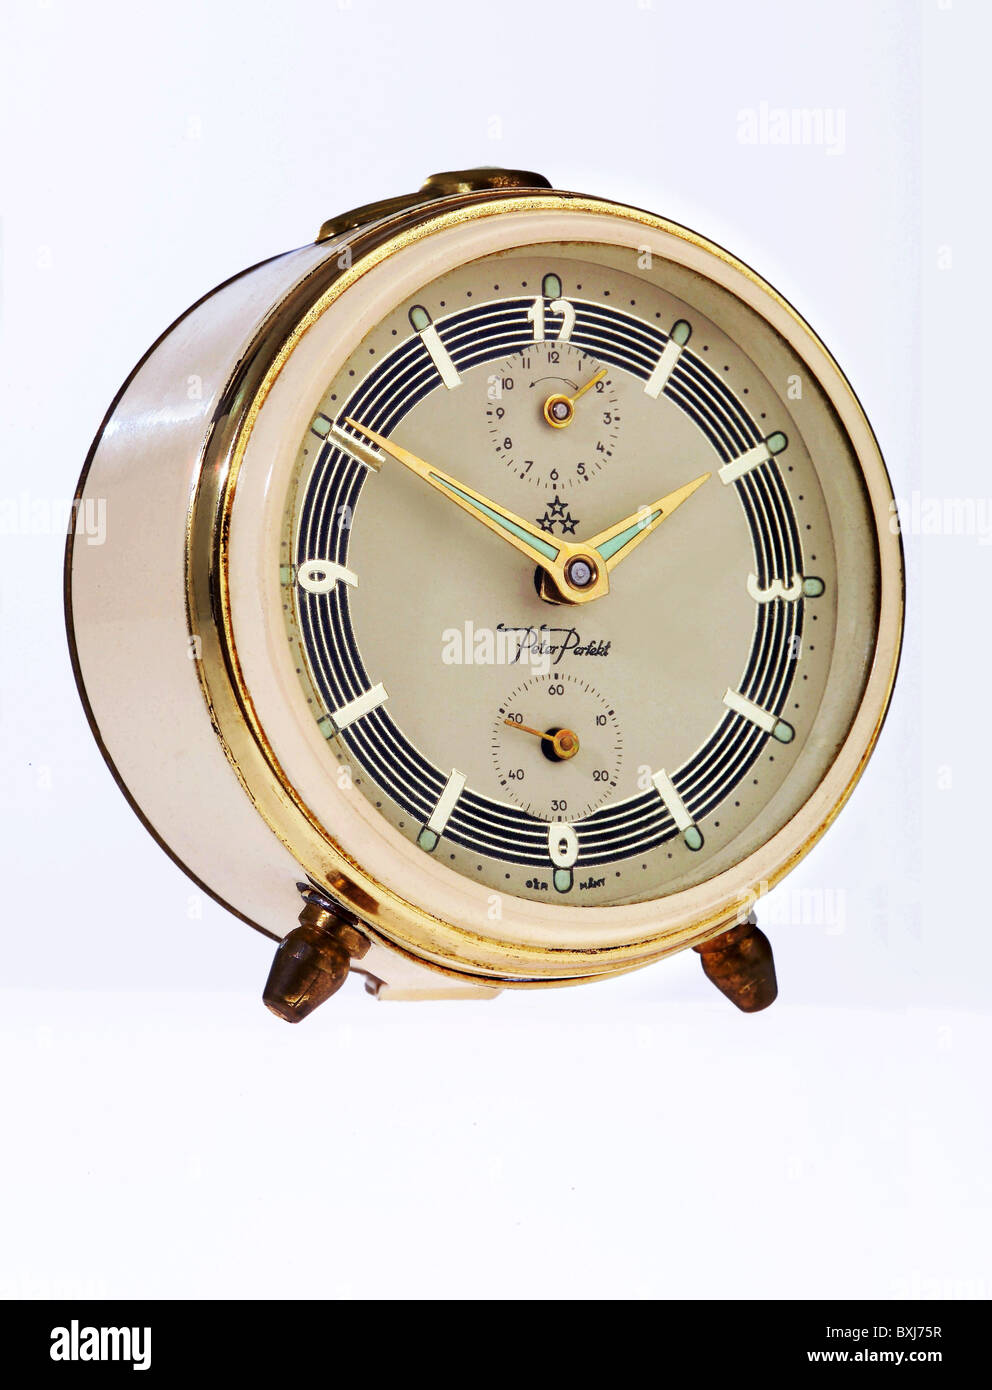 Uhren, Wecker 'Peter Perfect', Deutschland, um 1958,  zusätzliche-Rechteklärung-nicht vorhanden Stockfotografie - Alamy